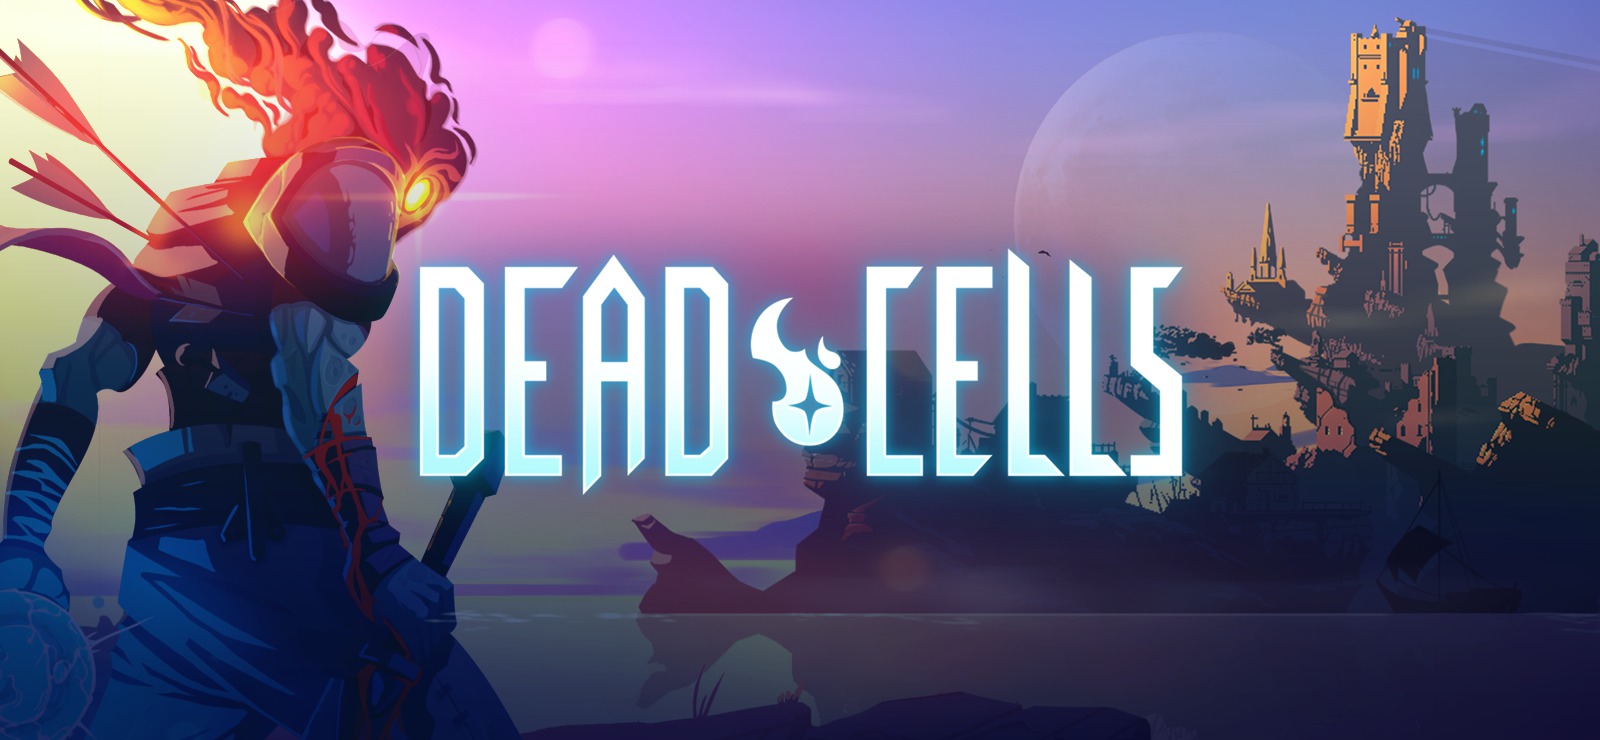 بازی Dead Cells بیش از یک میلیون نسخه به فروش رسانده است